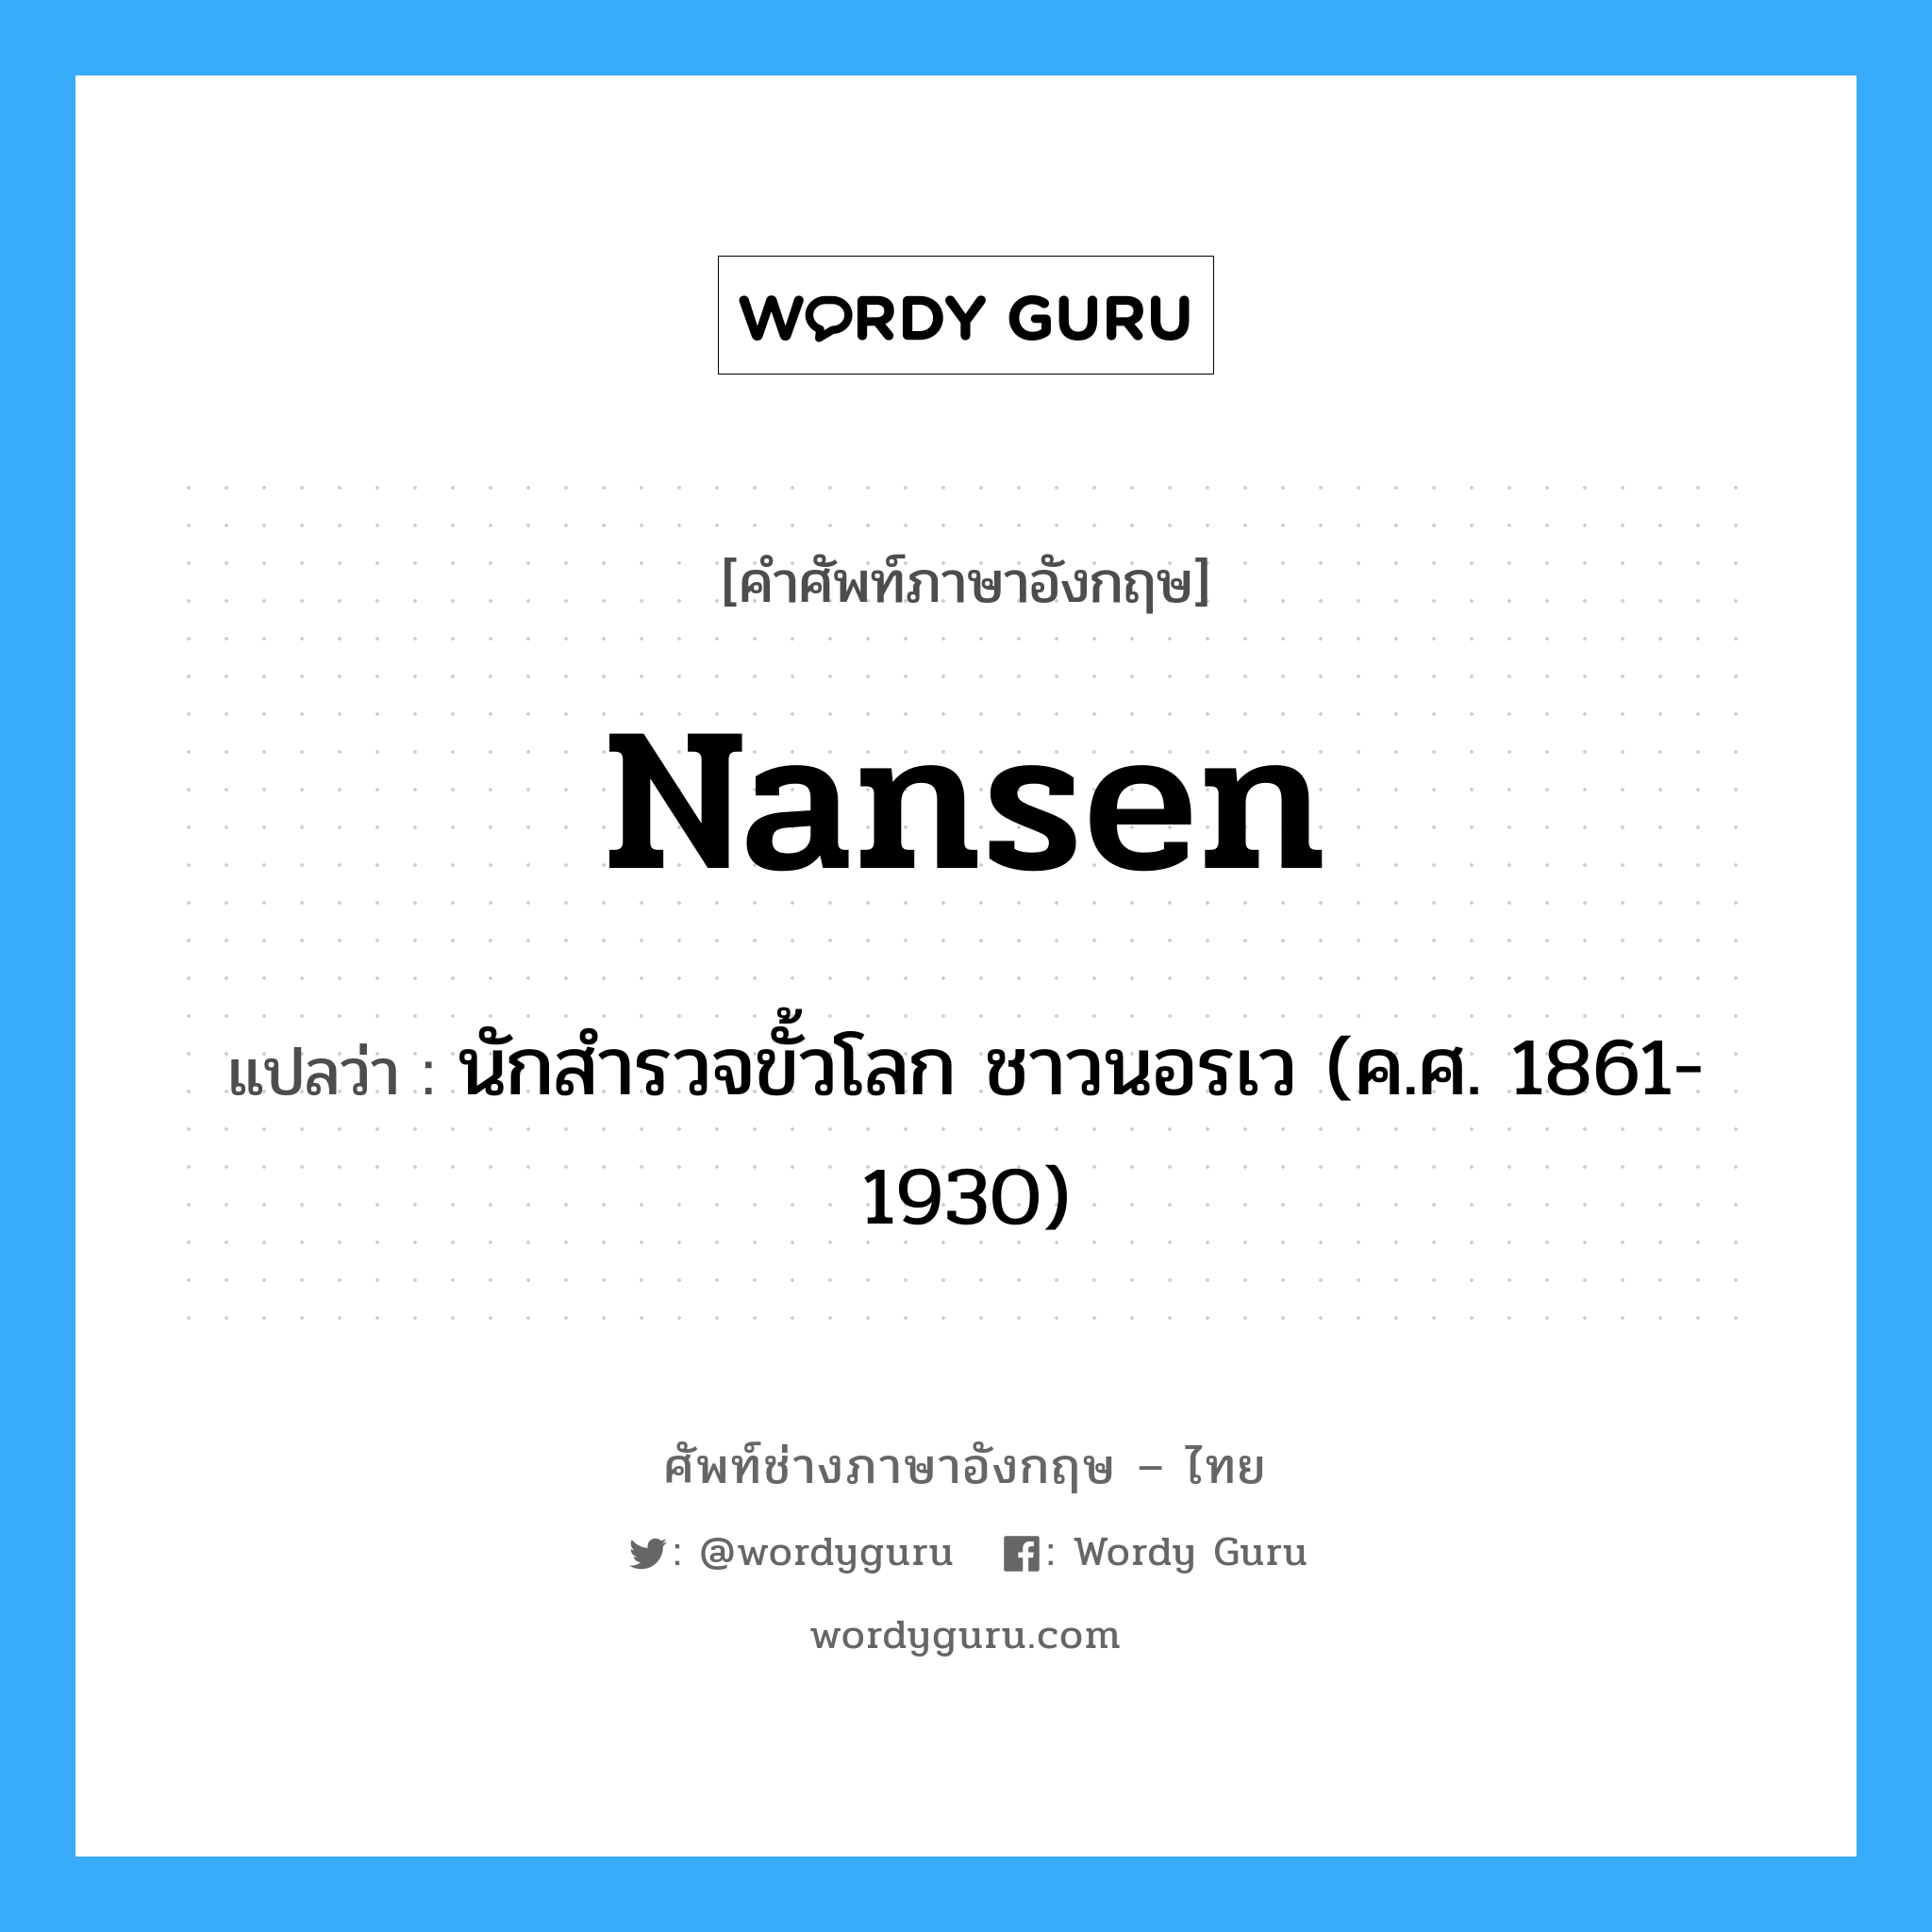 นักสำรวจขั้วโลก ชาวนอรเว (ค.ศ. 1861-1930) ภาษาอังกฤษ?, คำศัพท์ช่างภาษาอังกฤษ - ไทย นักสำรวจขั้วโลก ชาวนอรเว (ค.ศ. 1861-1930) คำศัพท์ภาษาอังกฤษ นักสำรวจขั้วโลก ชาวนอรเว (ค.ศ. 1861-1930) แปลว่า Nansen